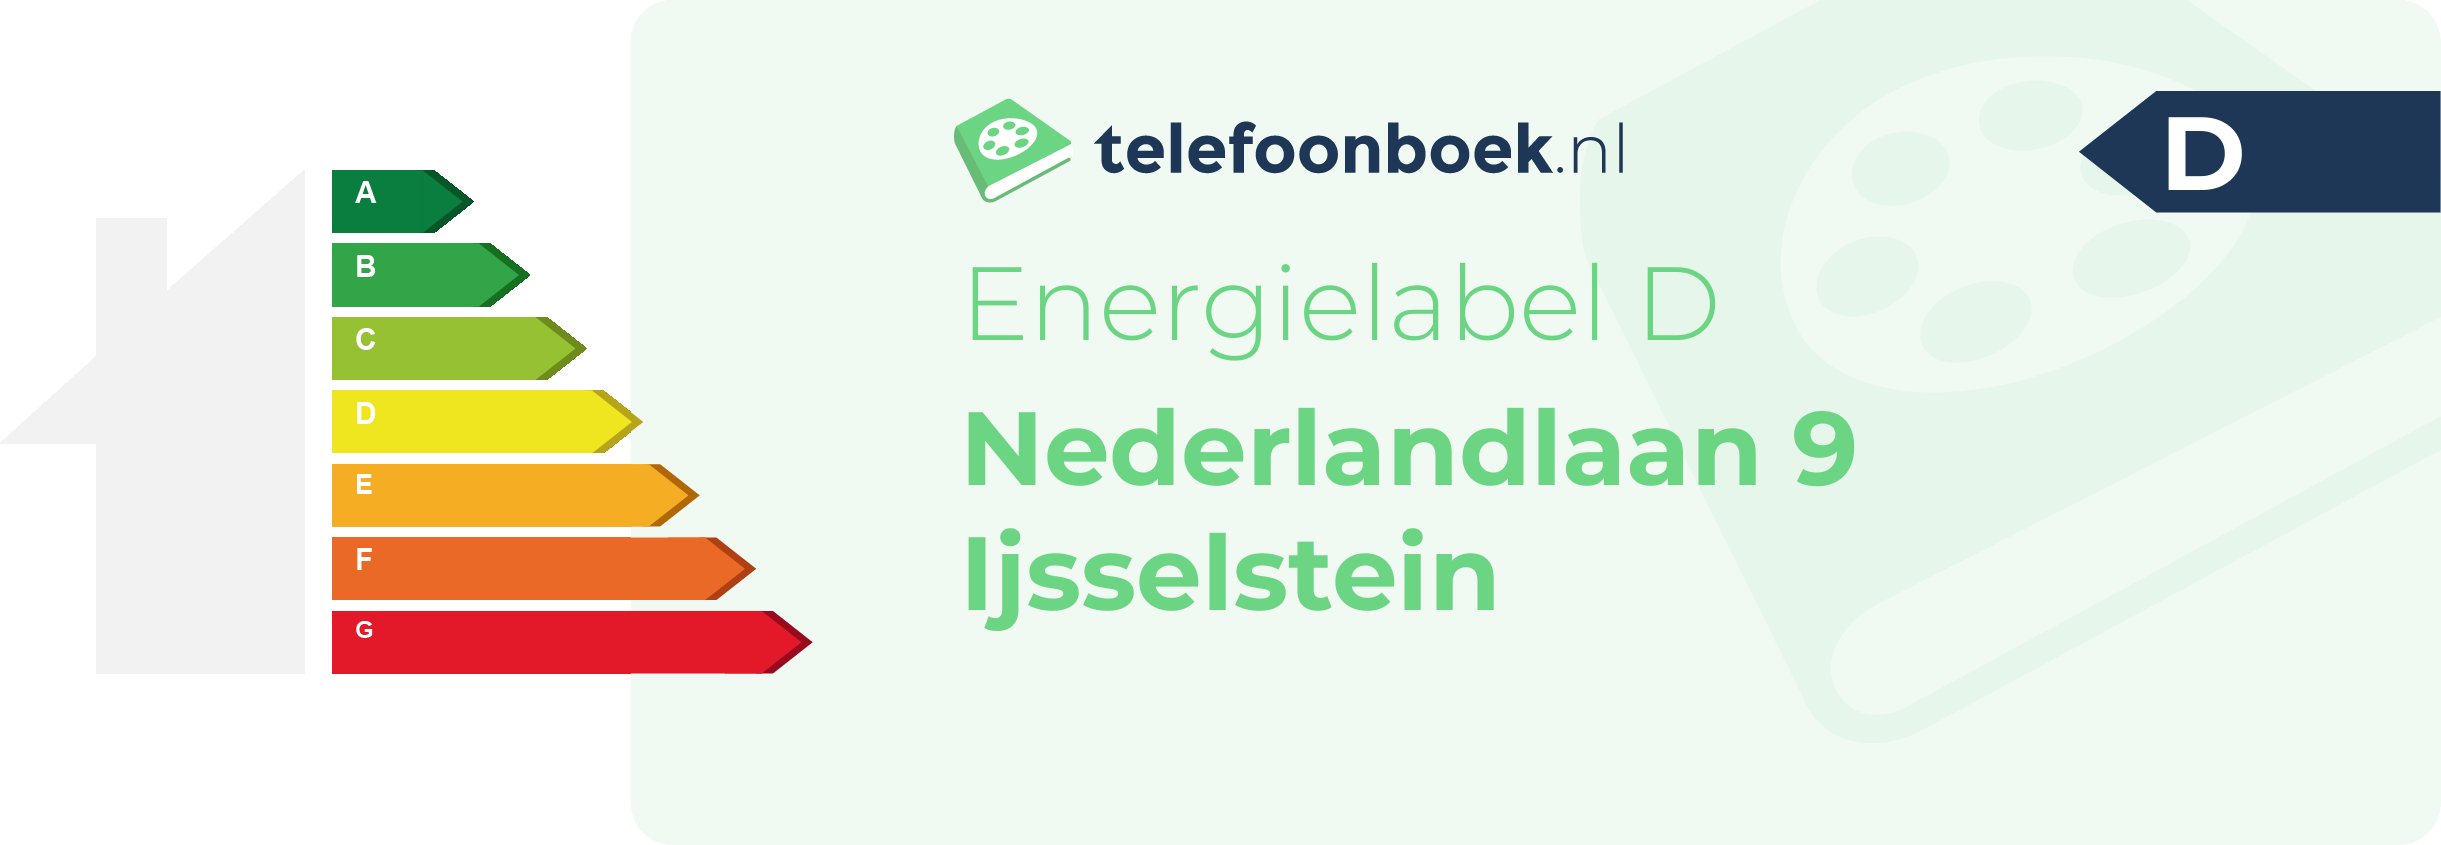 Energielabel Nederlandlaan 9 Ijsselstein